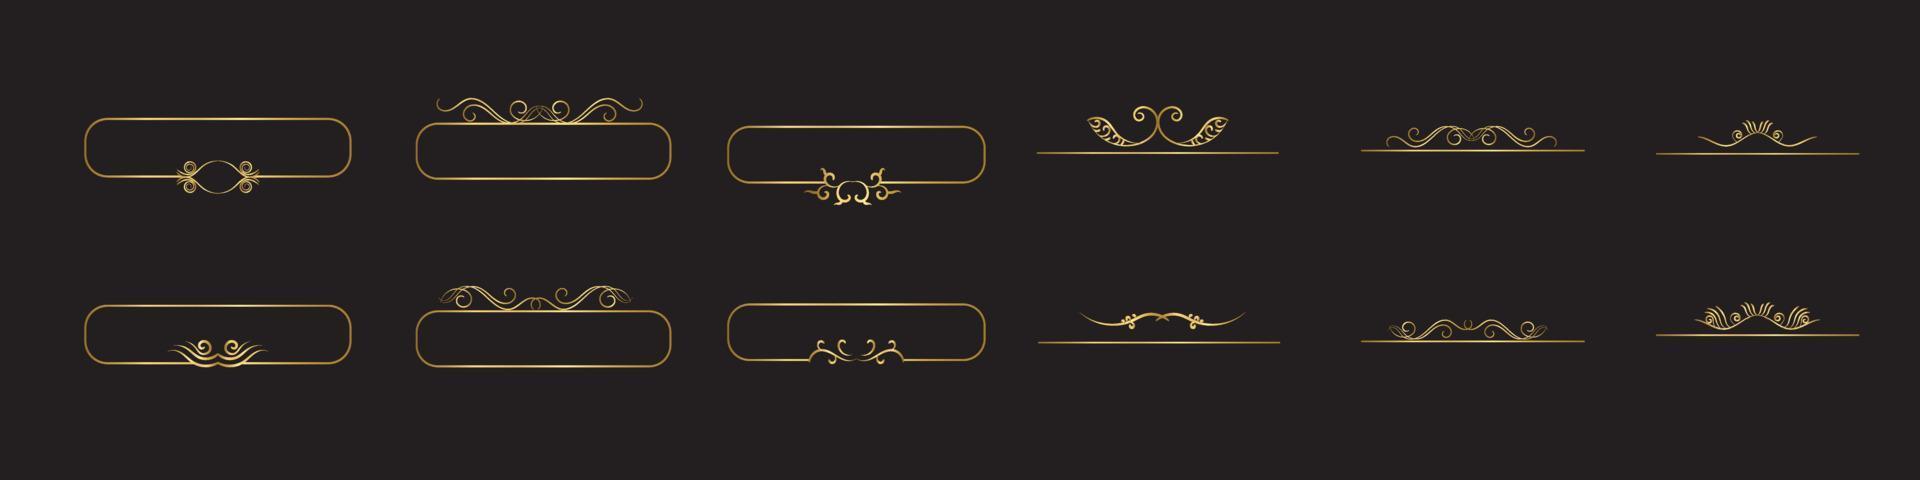 conjunto de modelo de logotipo de luxo de letra inicial em arte vetorial para restaurante, hotel, heráldica, joias, moda e outras ilustrações vetoriais. vetor